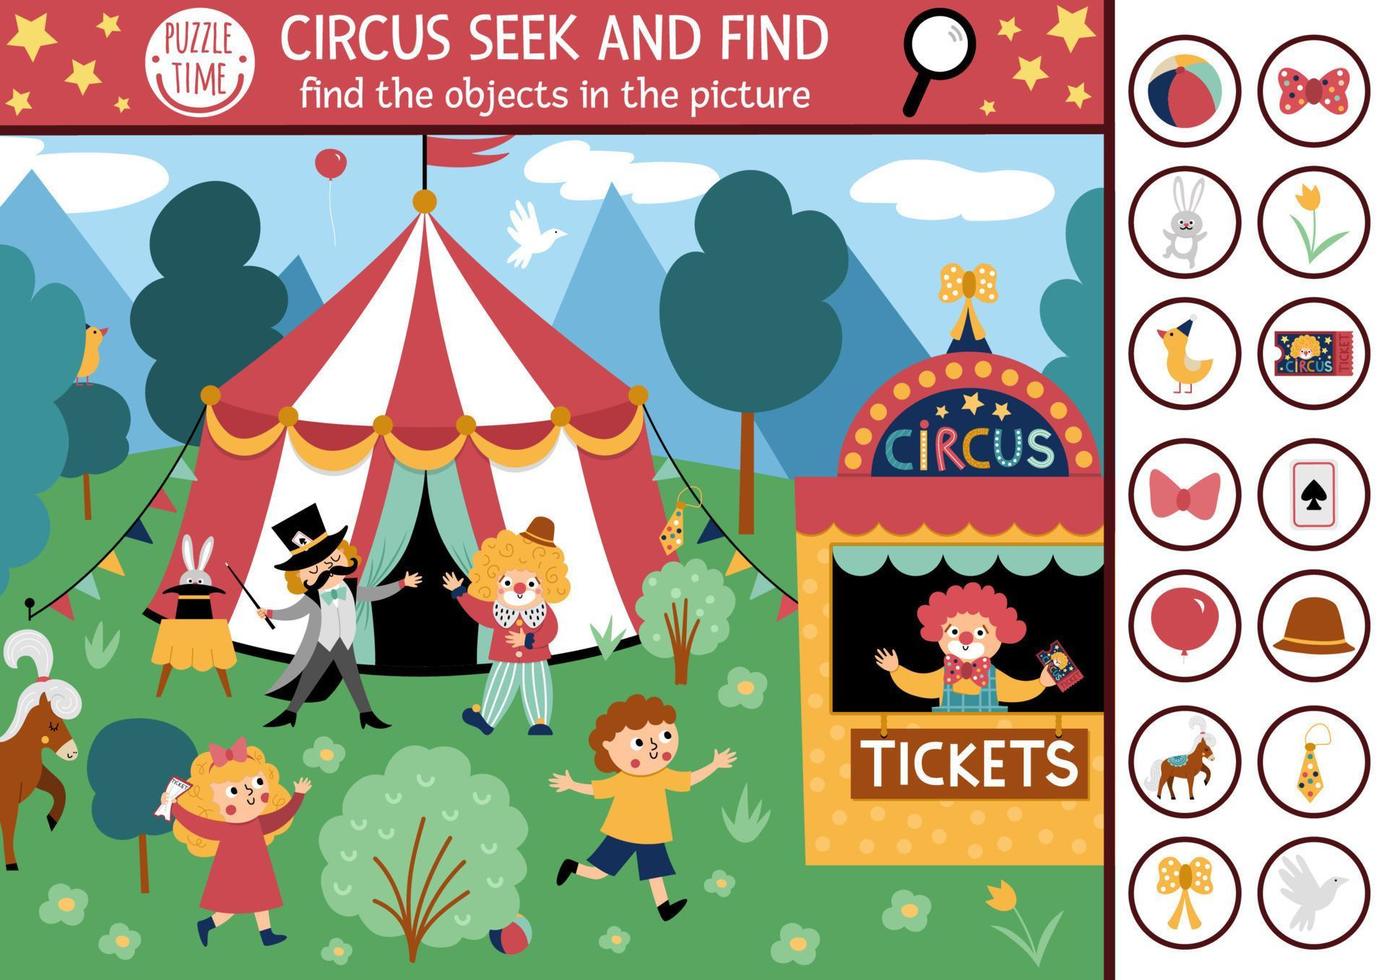 vektor cirkus sökande spel med nöje visa tält, clown. fläck dold objekt i de bild. enkel festival tält söka och hitta pedagogisk tryckbar aktivitet för barn